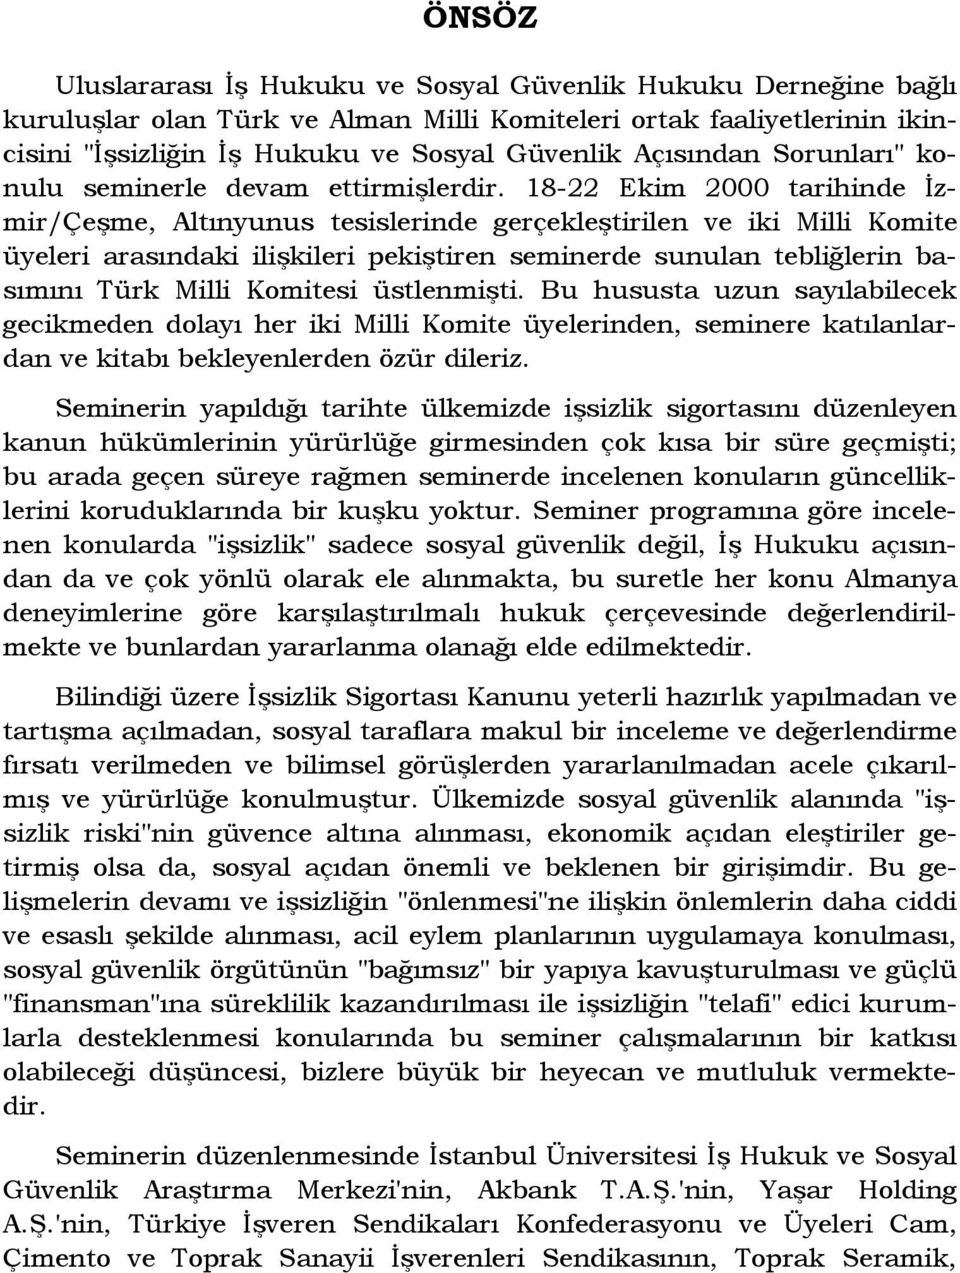 18-22 Ekim 2000 tarihinde Đzmir/Çeşme, Altınyunus tesislerinde gerçekleştirilen ve iki Milli Komite üyeleri arasındaki ilişkileri pekiştiren seminerde sunulan tebliğlerin basımını Türk Milli Komitesi